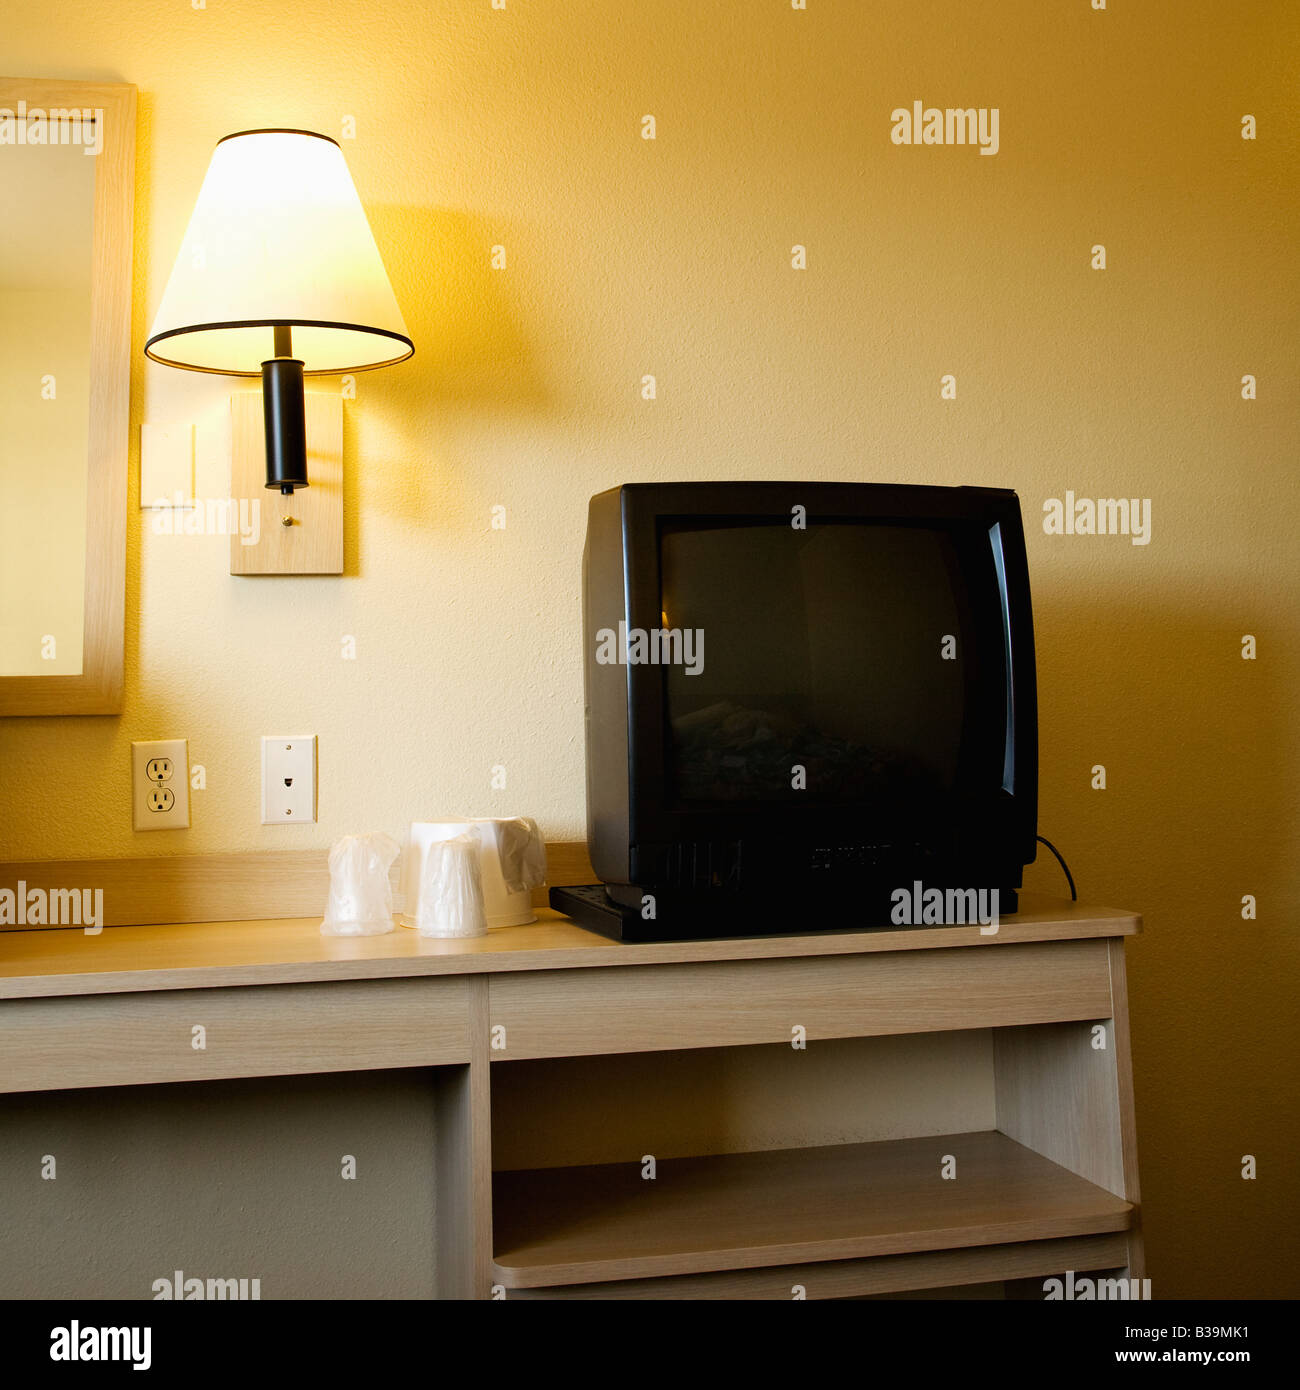 Innenaufnahme der Motel-Zimmer mit TV-Gerät auf dem Nachttisch neben Wandleuchte Stockfoto